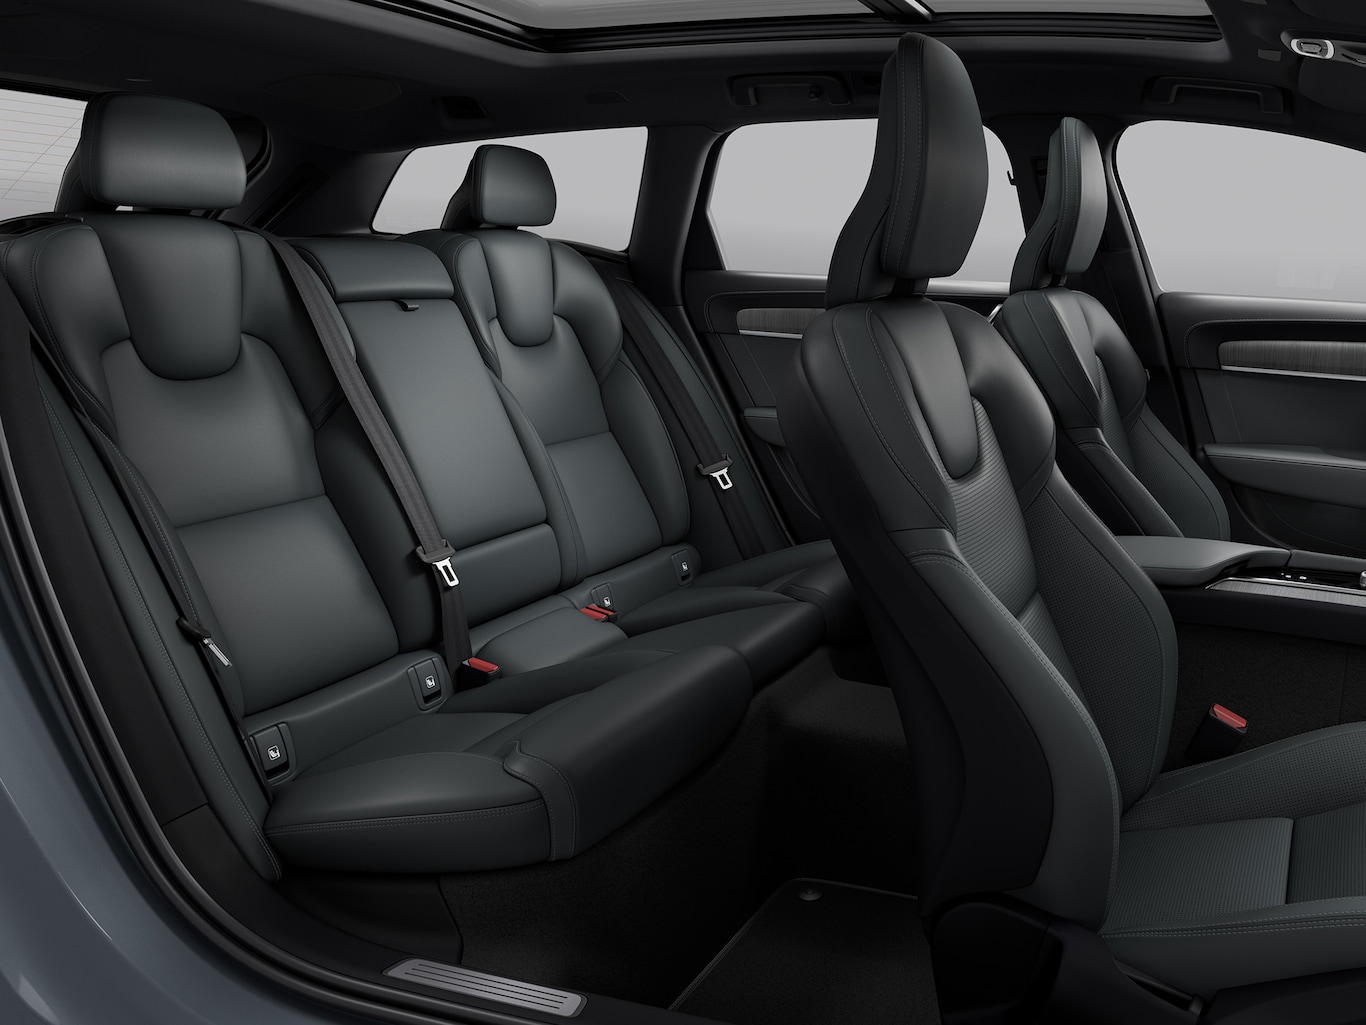 볼보 V90 Cross Country에는 다양한 적재와 좌석 옵션 그리고 넉넉한 디자인이 적용되었습니다.